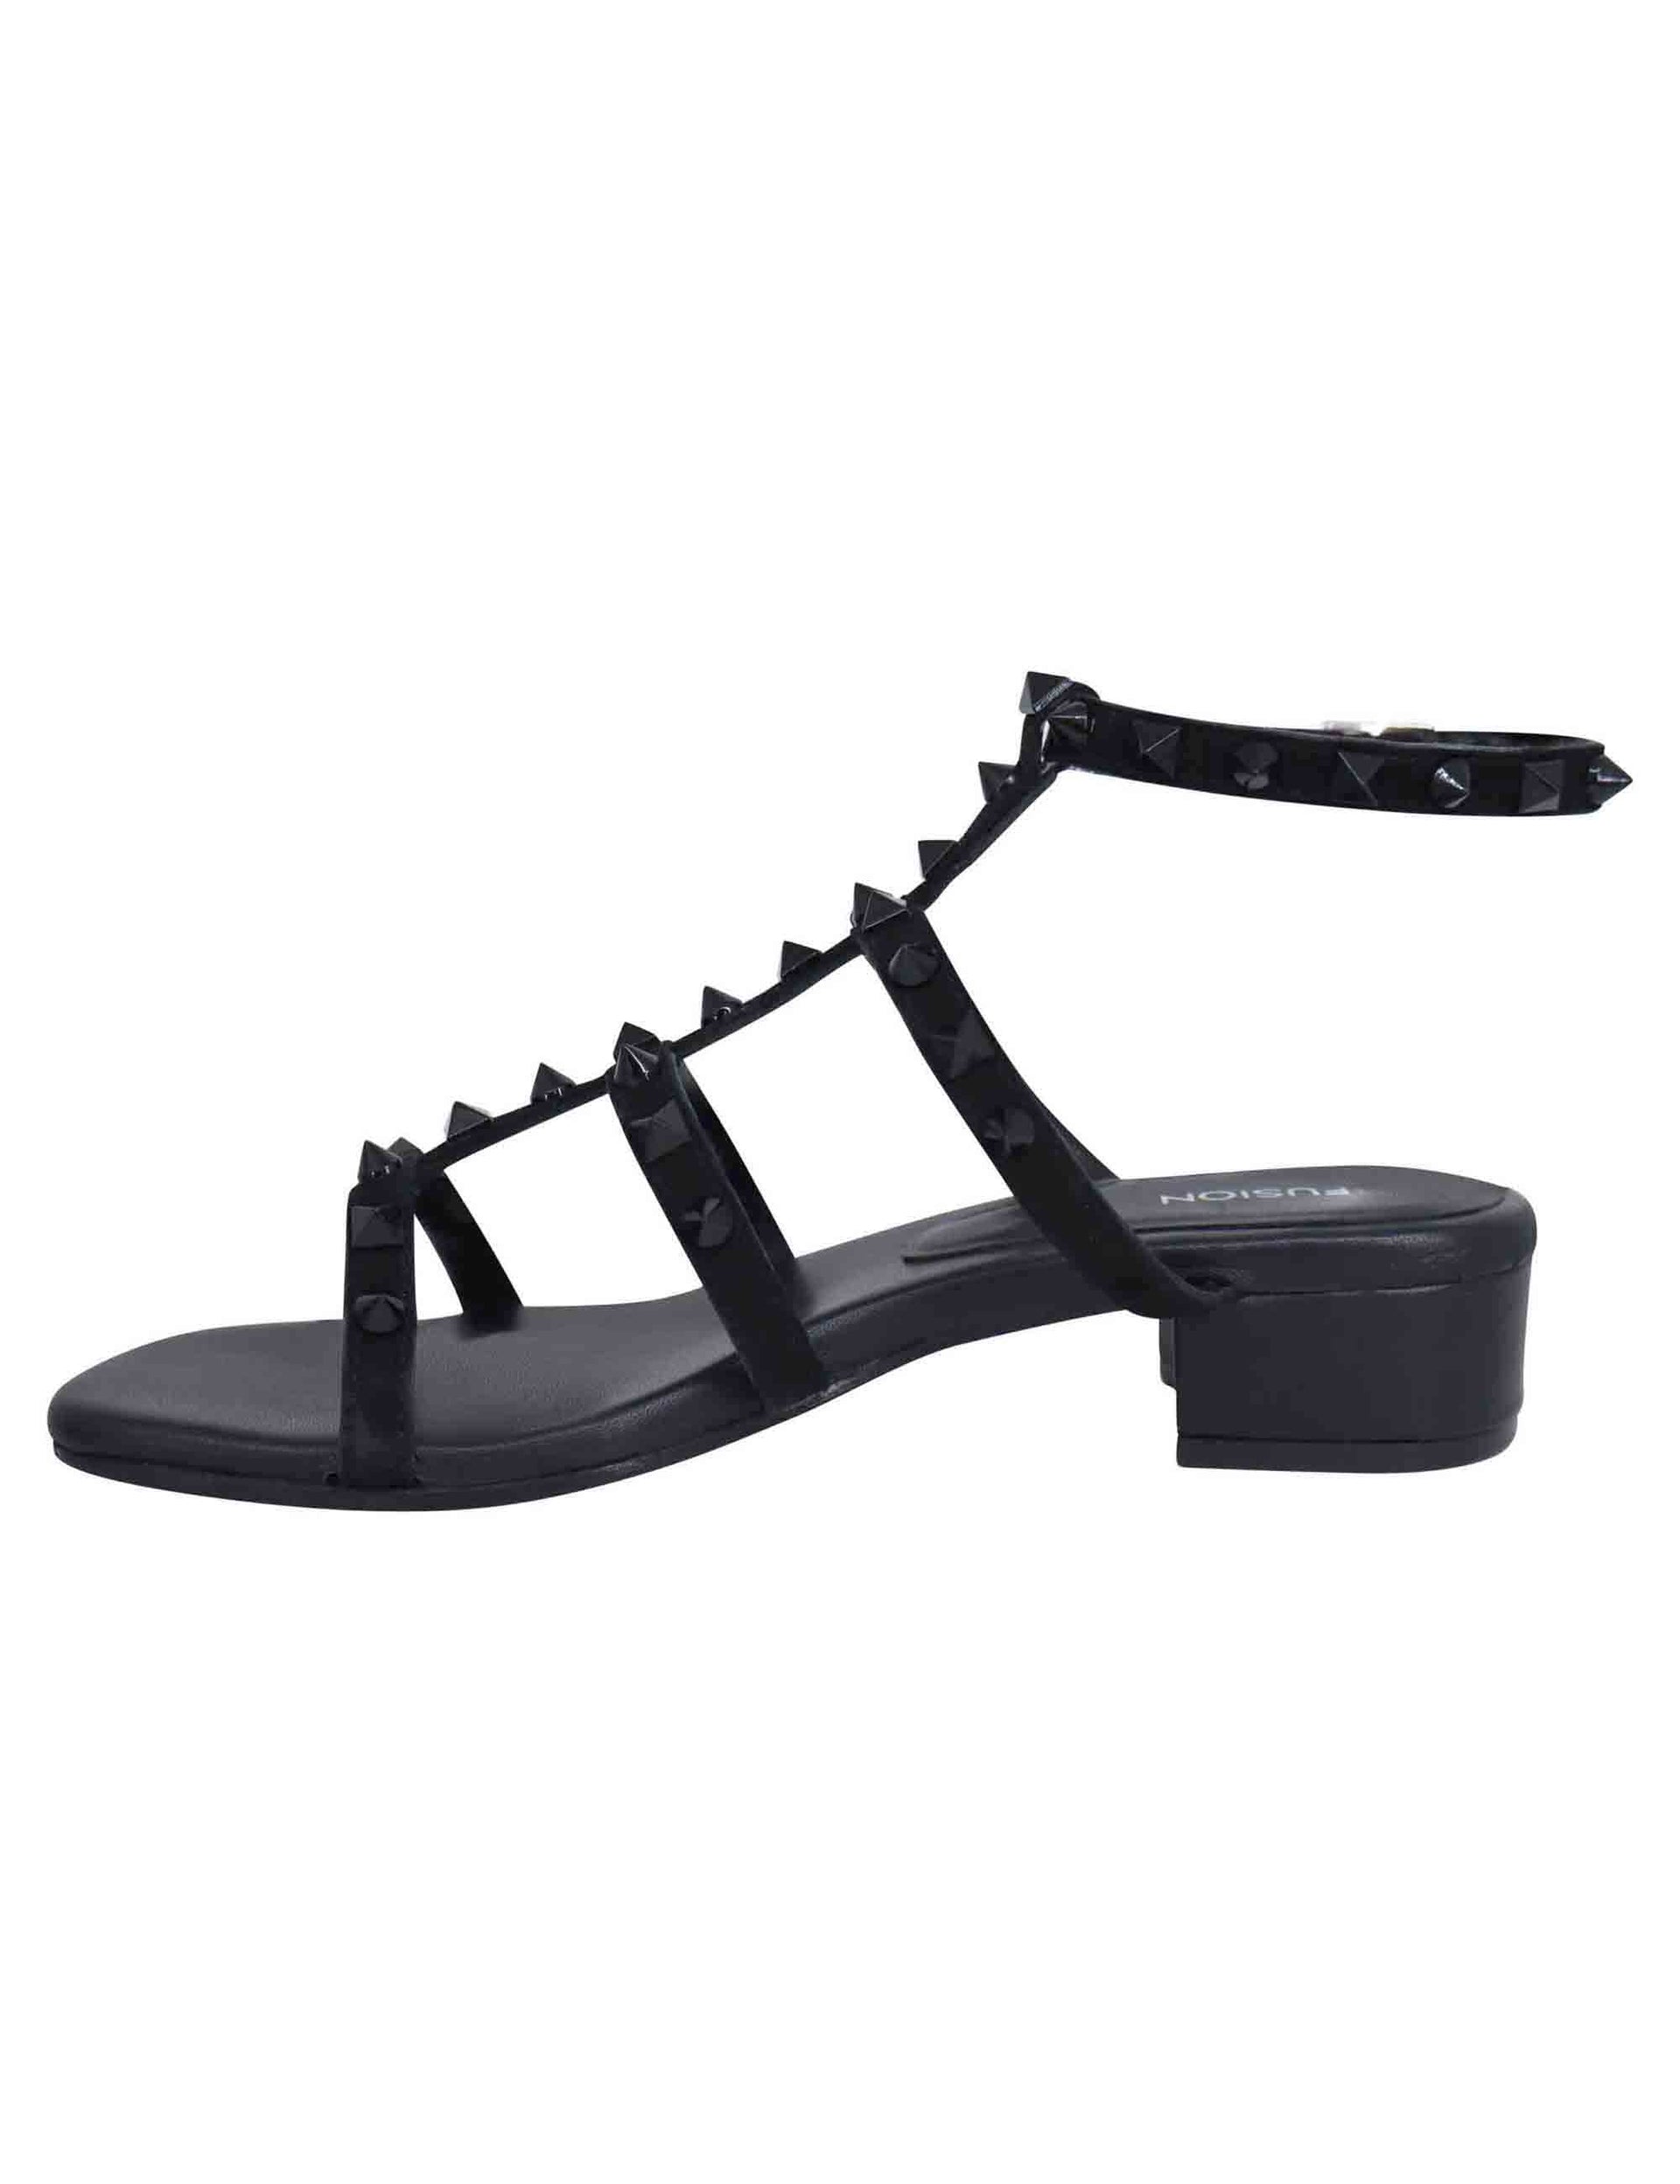 Sandali gladiatore donna in camoscio nero con tacco basso